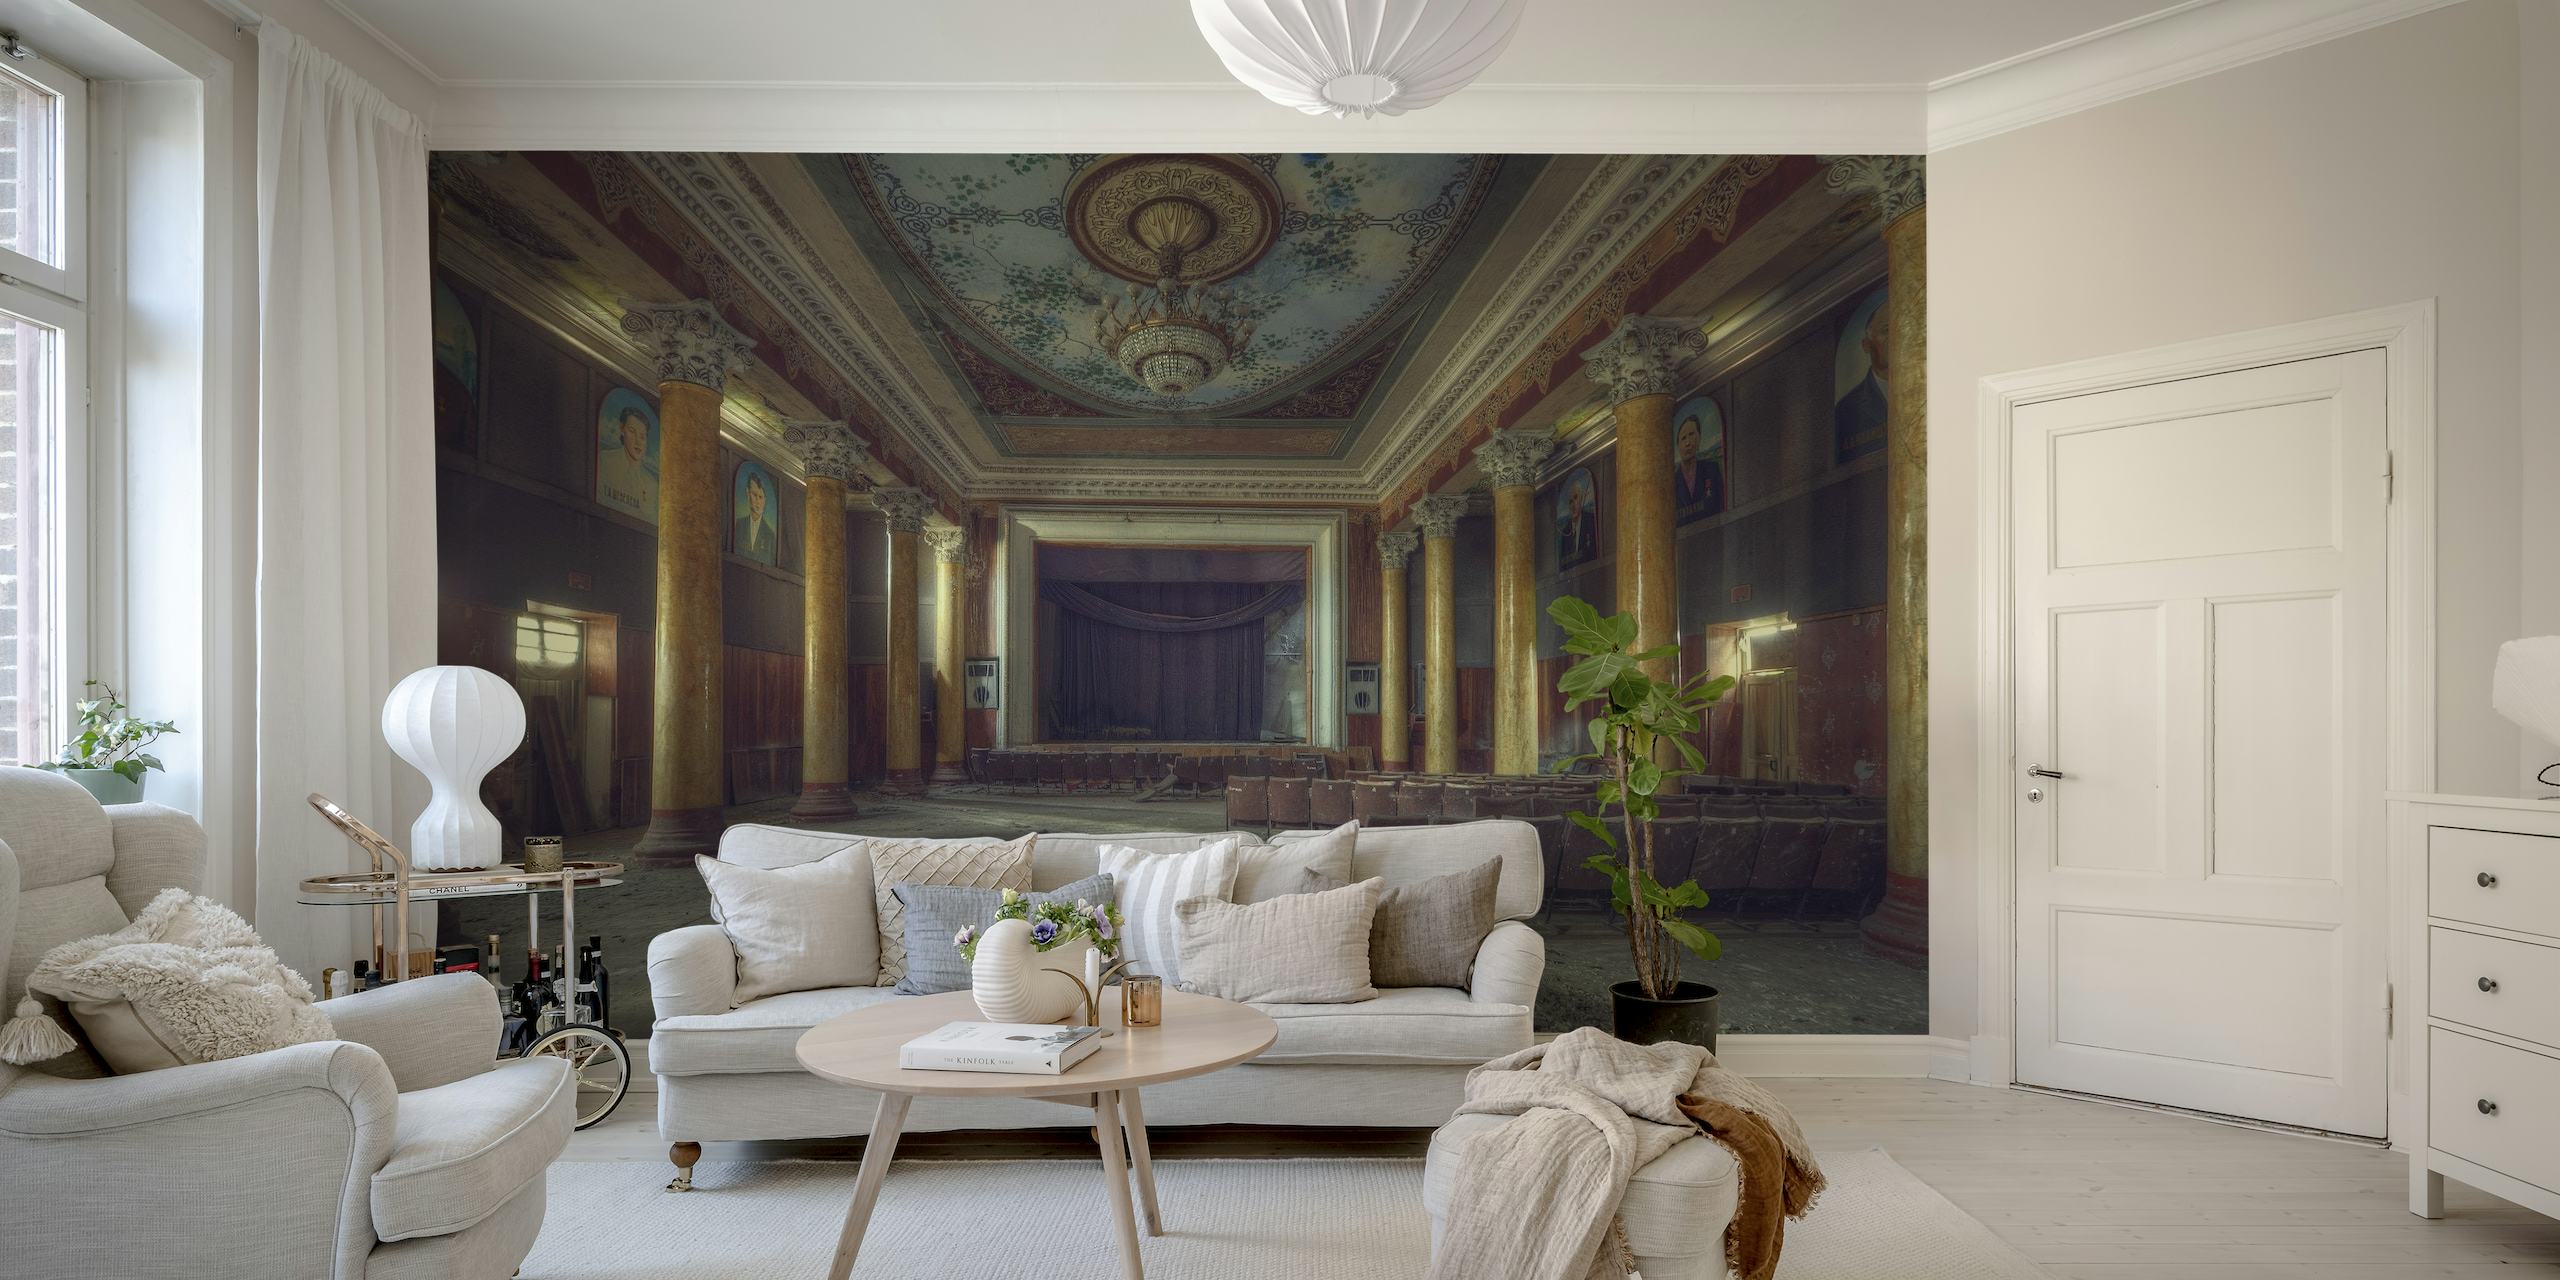 Fototapeta w stylu vintage przedstawiająca opuszczoną wielką salę z ozdobnymi detalami architektonicznymi